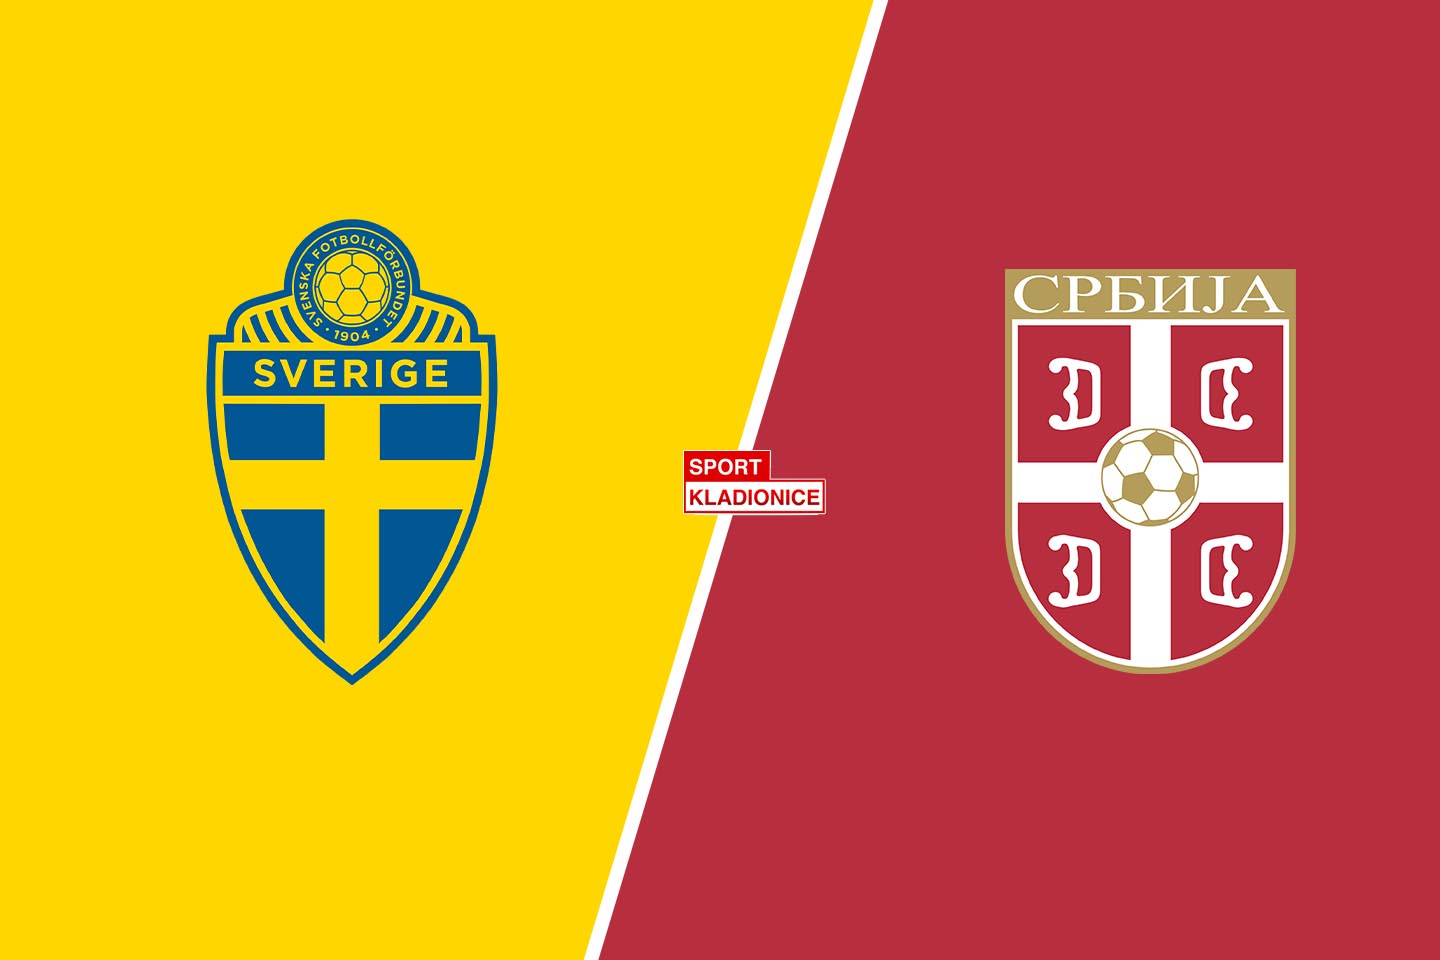 Švedska vs. Srbija